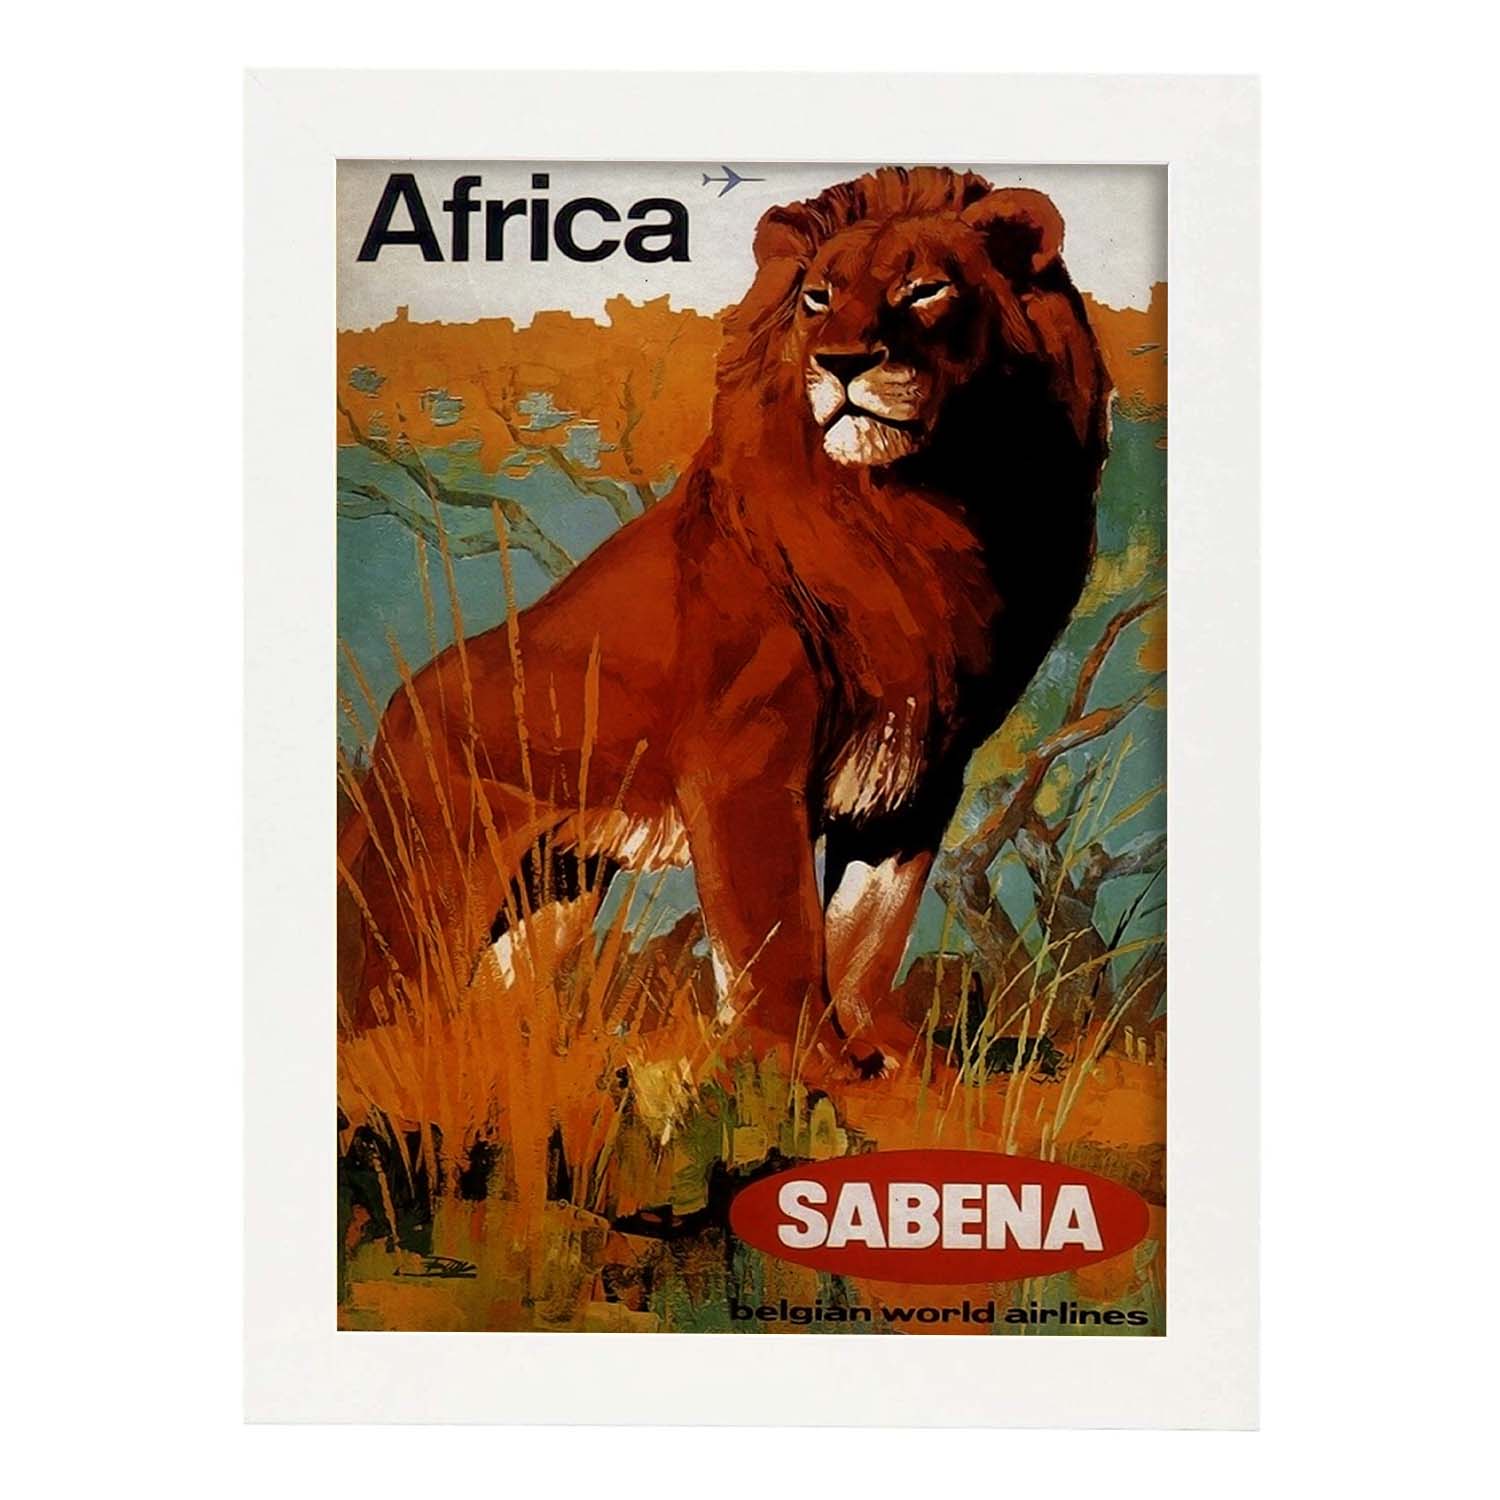 Poster vintage de Africa - Sabena. con imágenes vintage y de publicidad antigua.-Artwork-Nacnic-A3-Marco Blanco-Nacnic Estudio SL